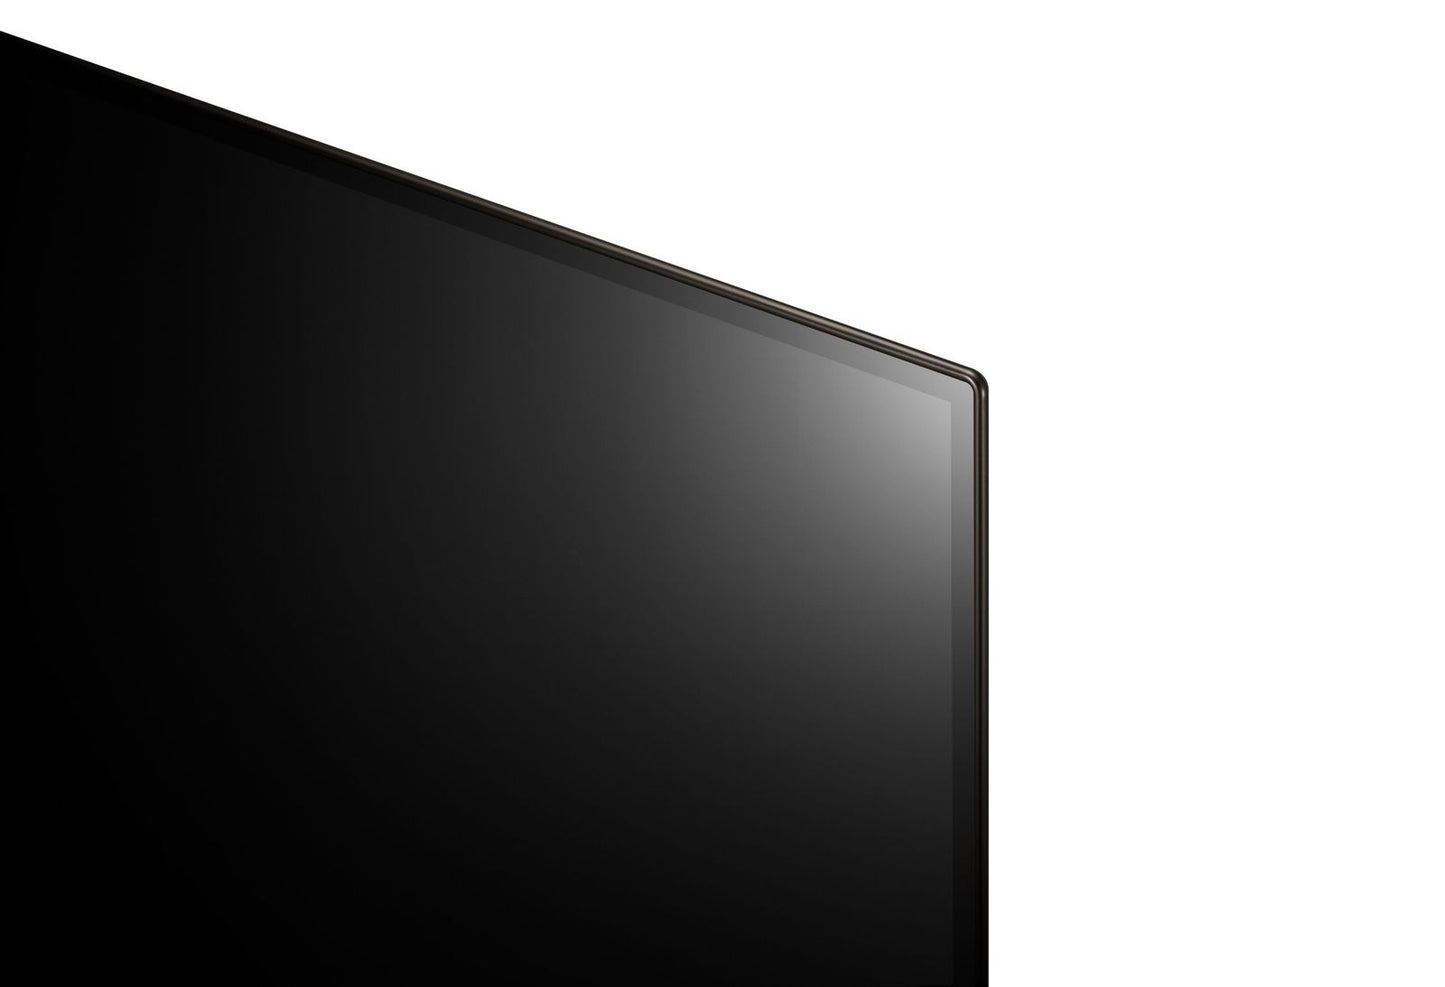 LG OLED83C46LA Super grootbeeld OLED Smart televisie, met 300,= cashback via LG